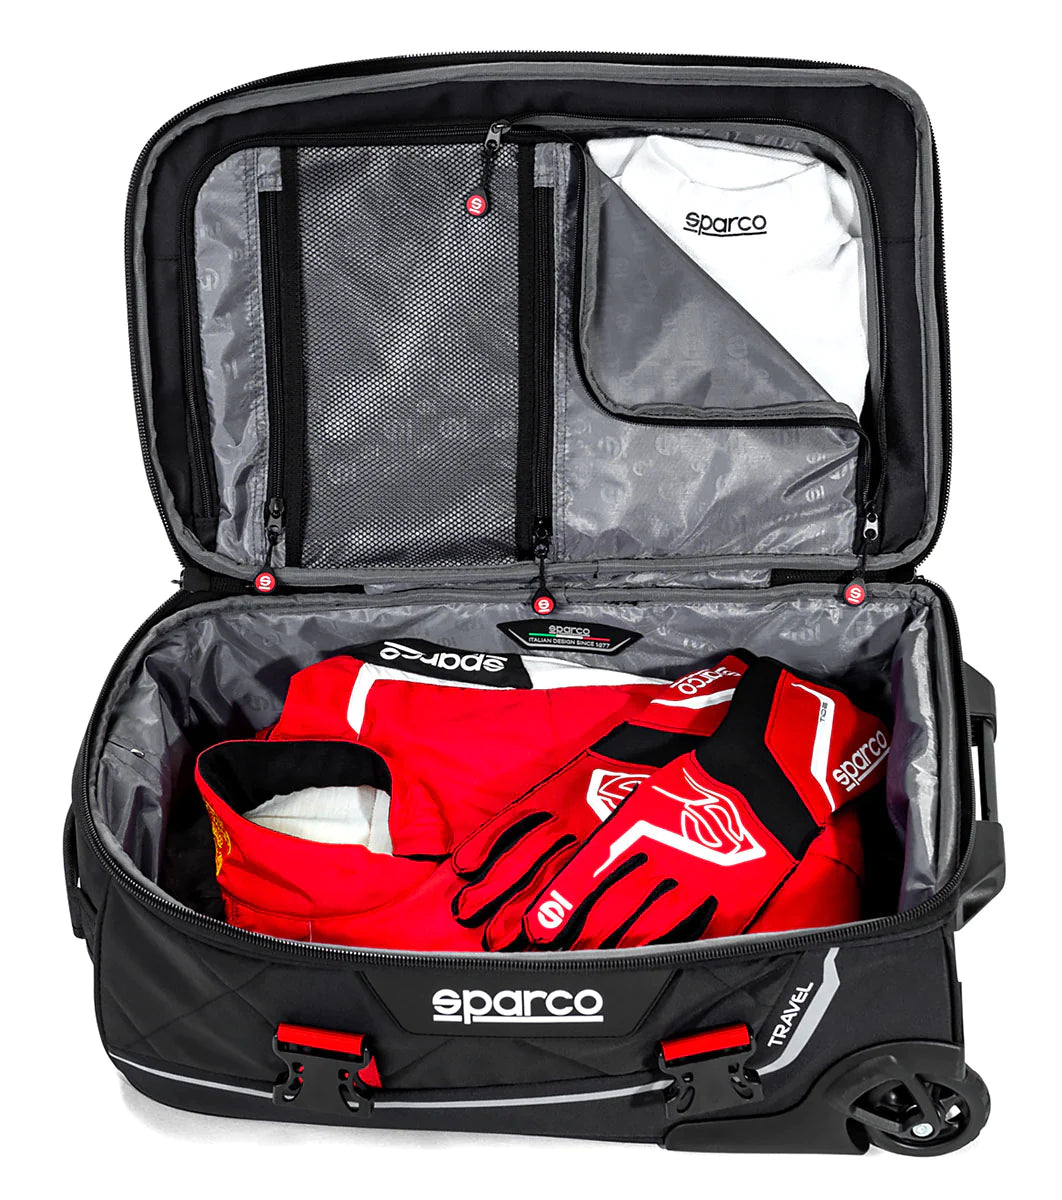 Sparco Travel Roller Bag